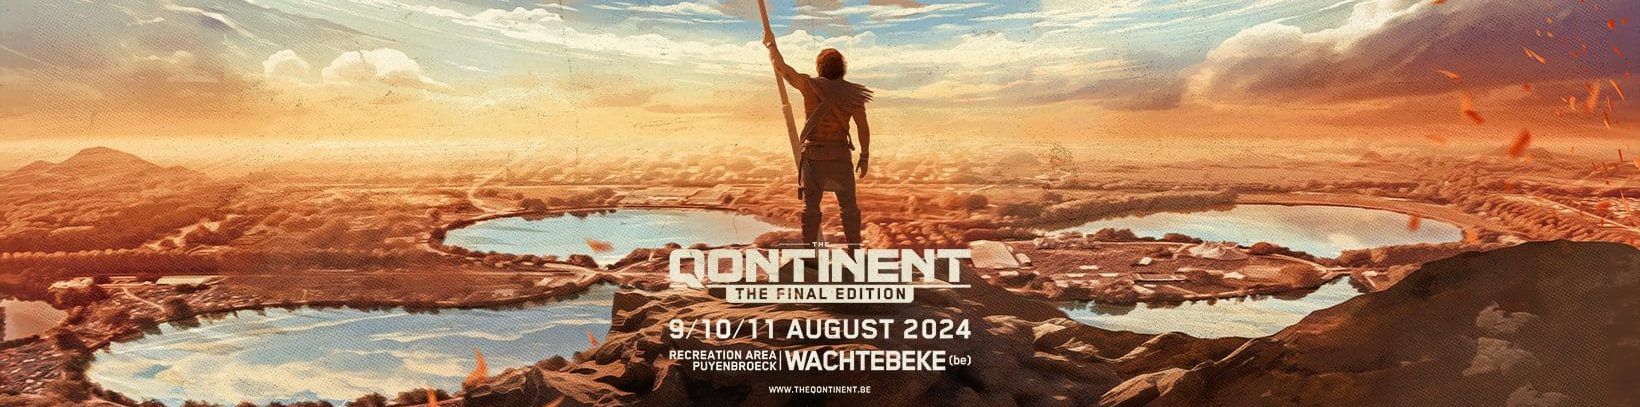 The Qontinent 2024